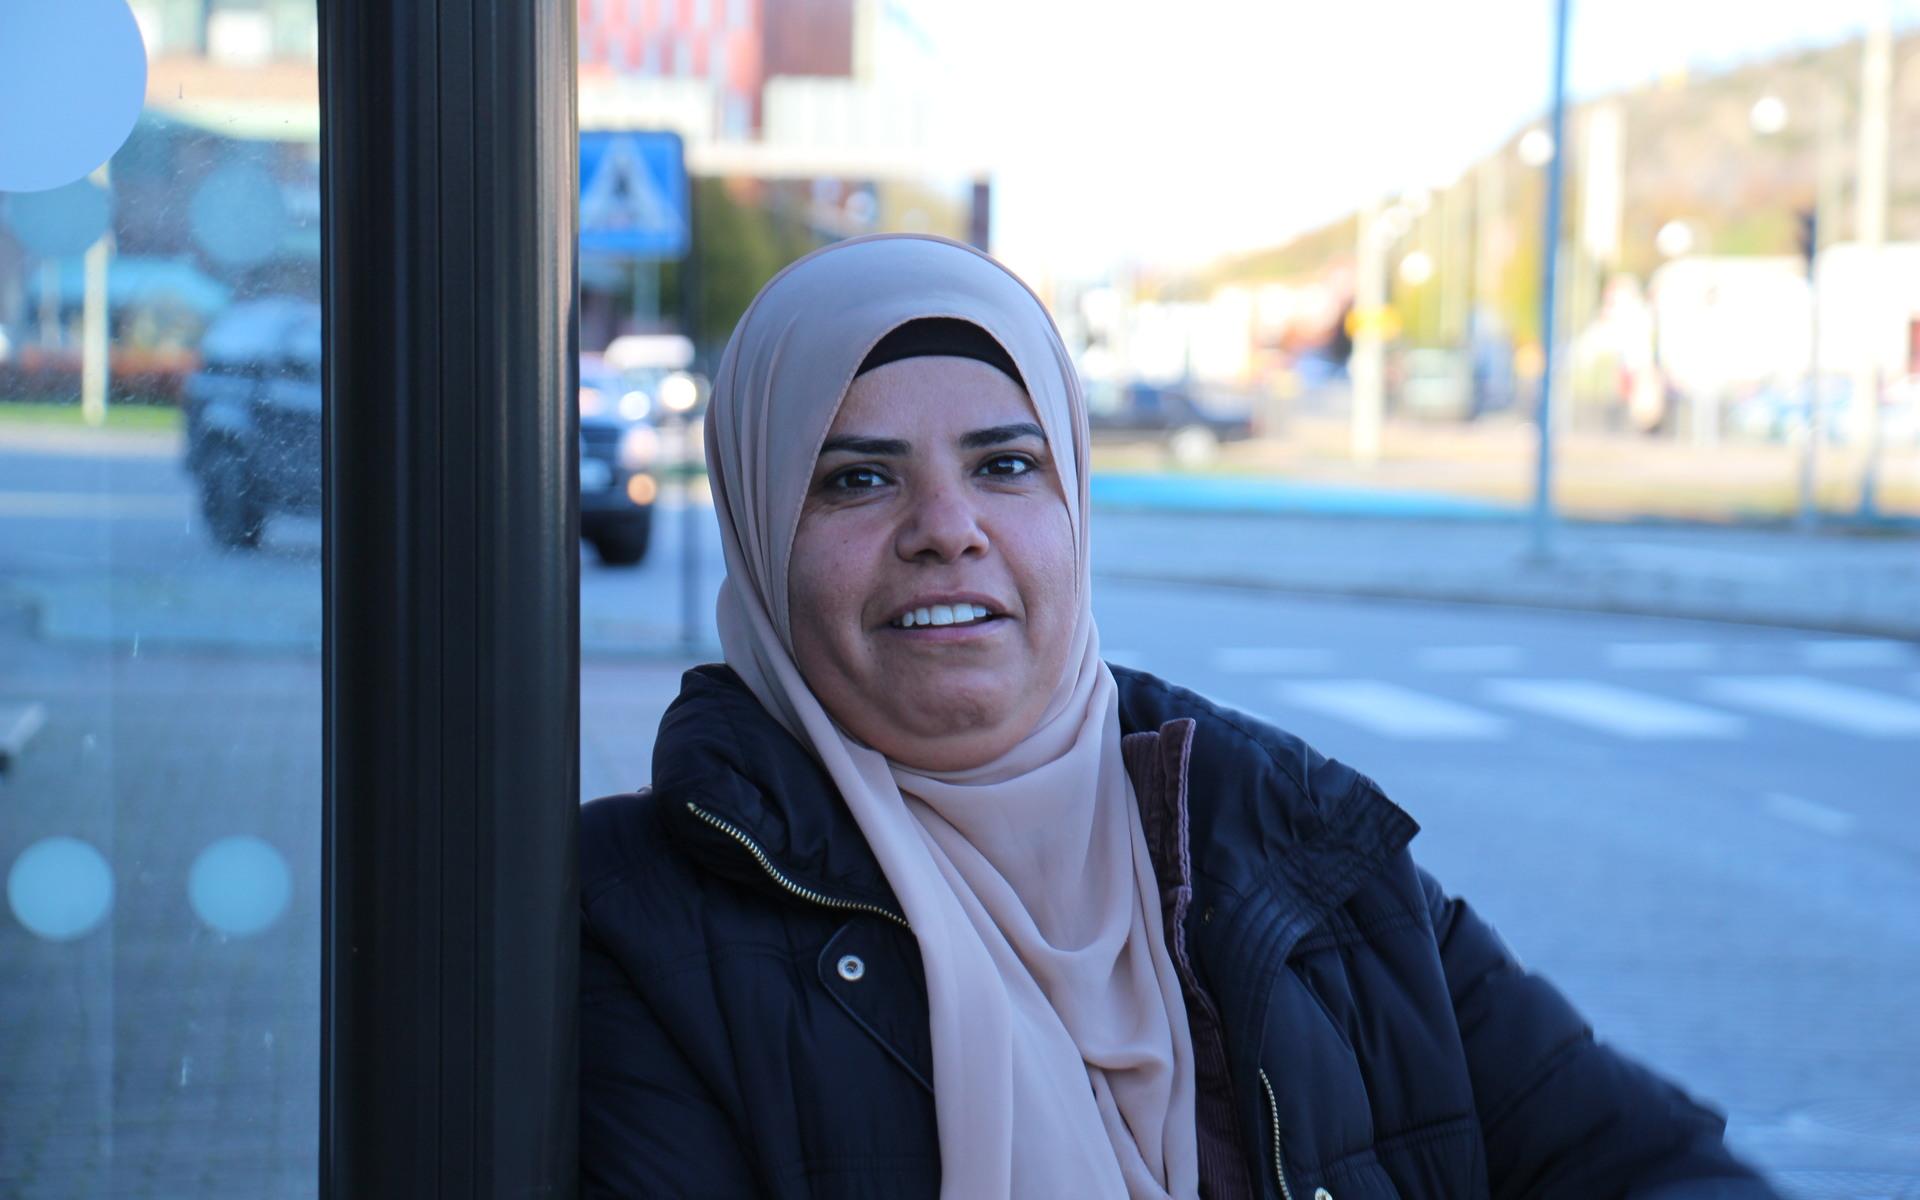 ”När jag kom hit till Sverige och såg att kvinnor körde buss så blev jag jätteglad och ville också köra buss här”, säger Sanaa flyttade till Sverige 2015. 